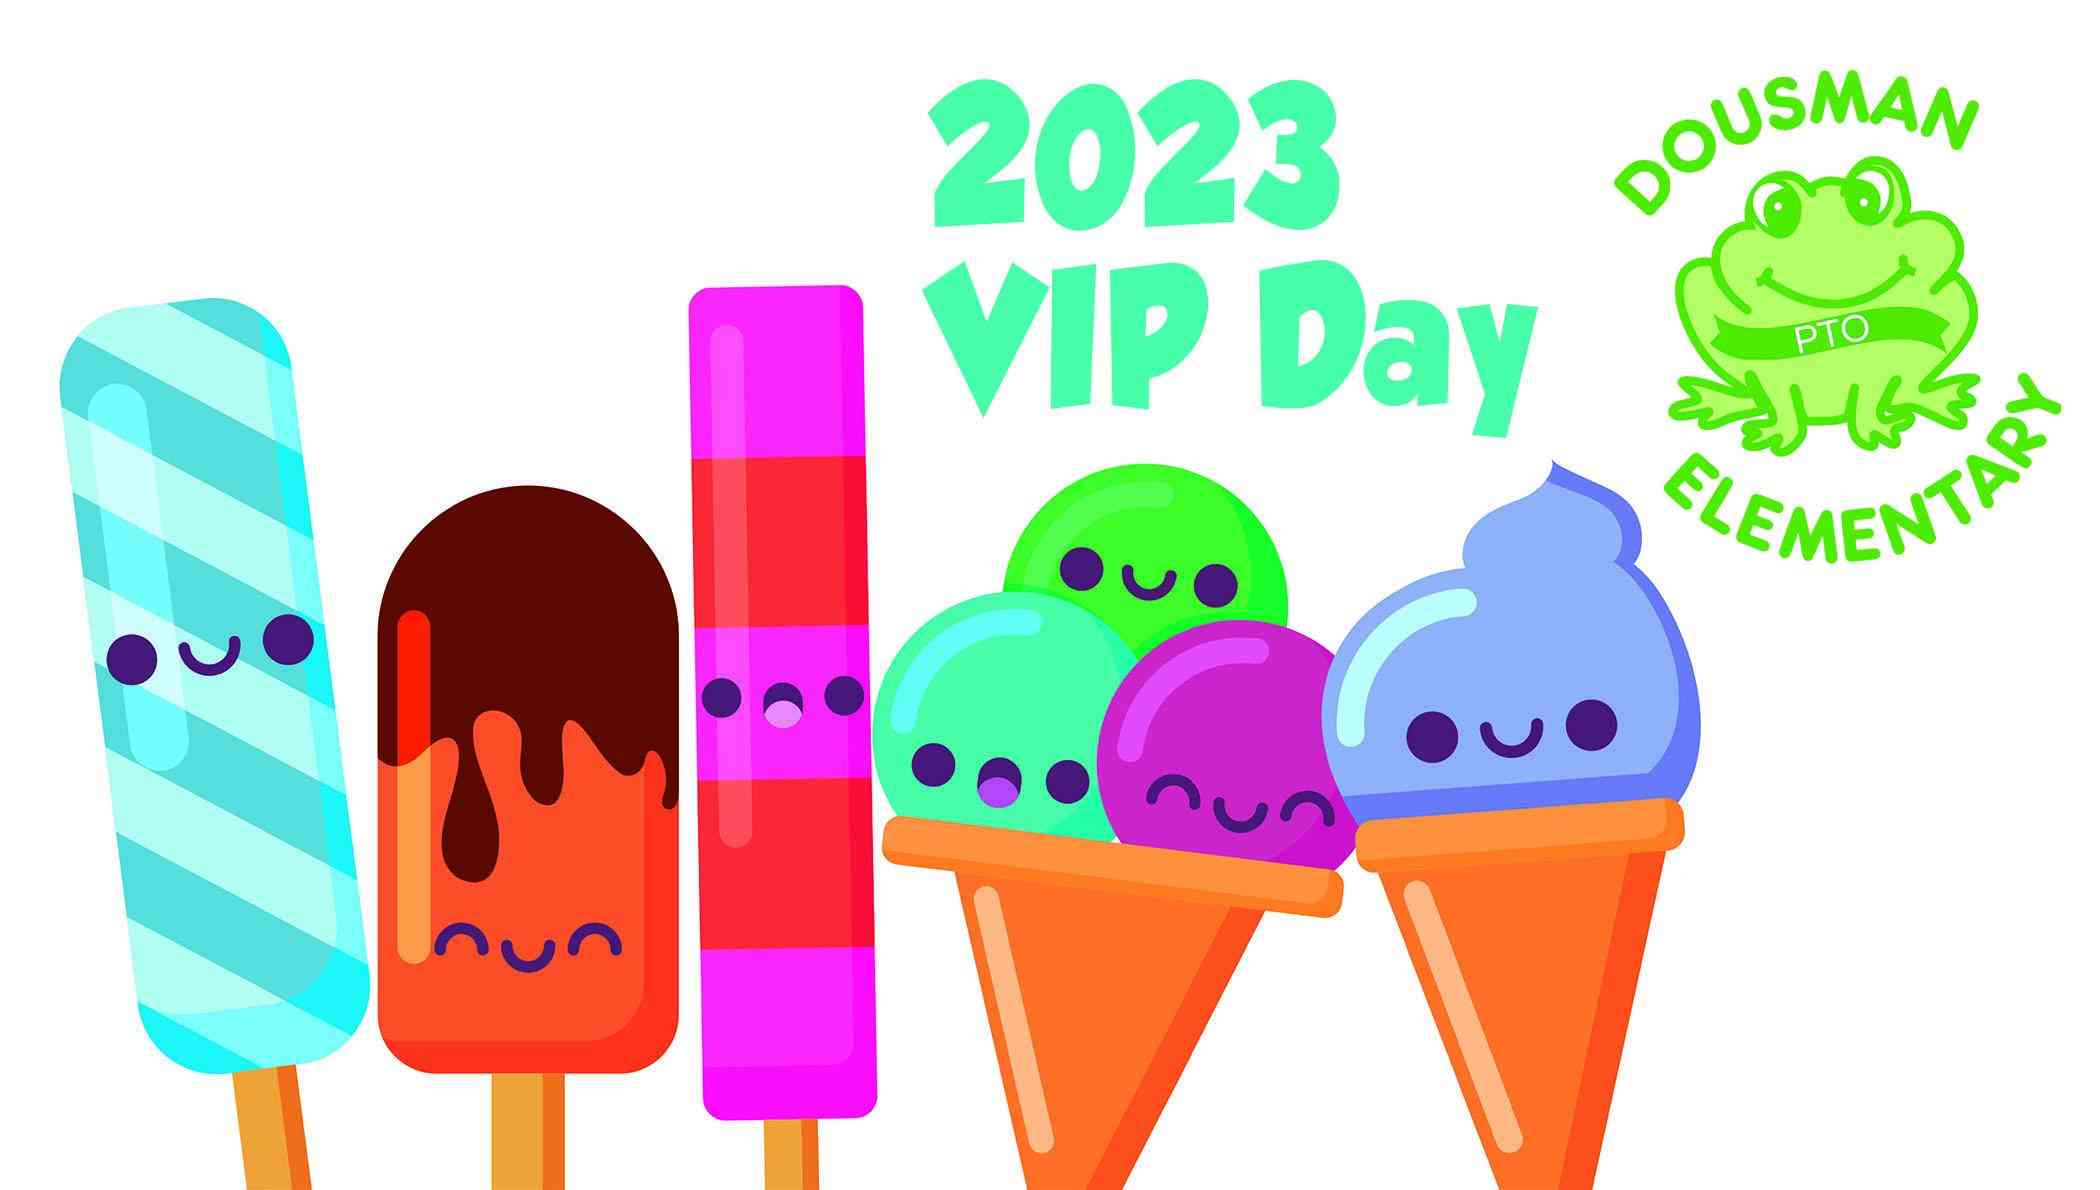 2023 Dousman VIP Day Image